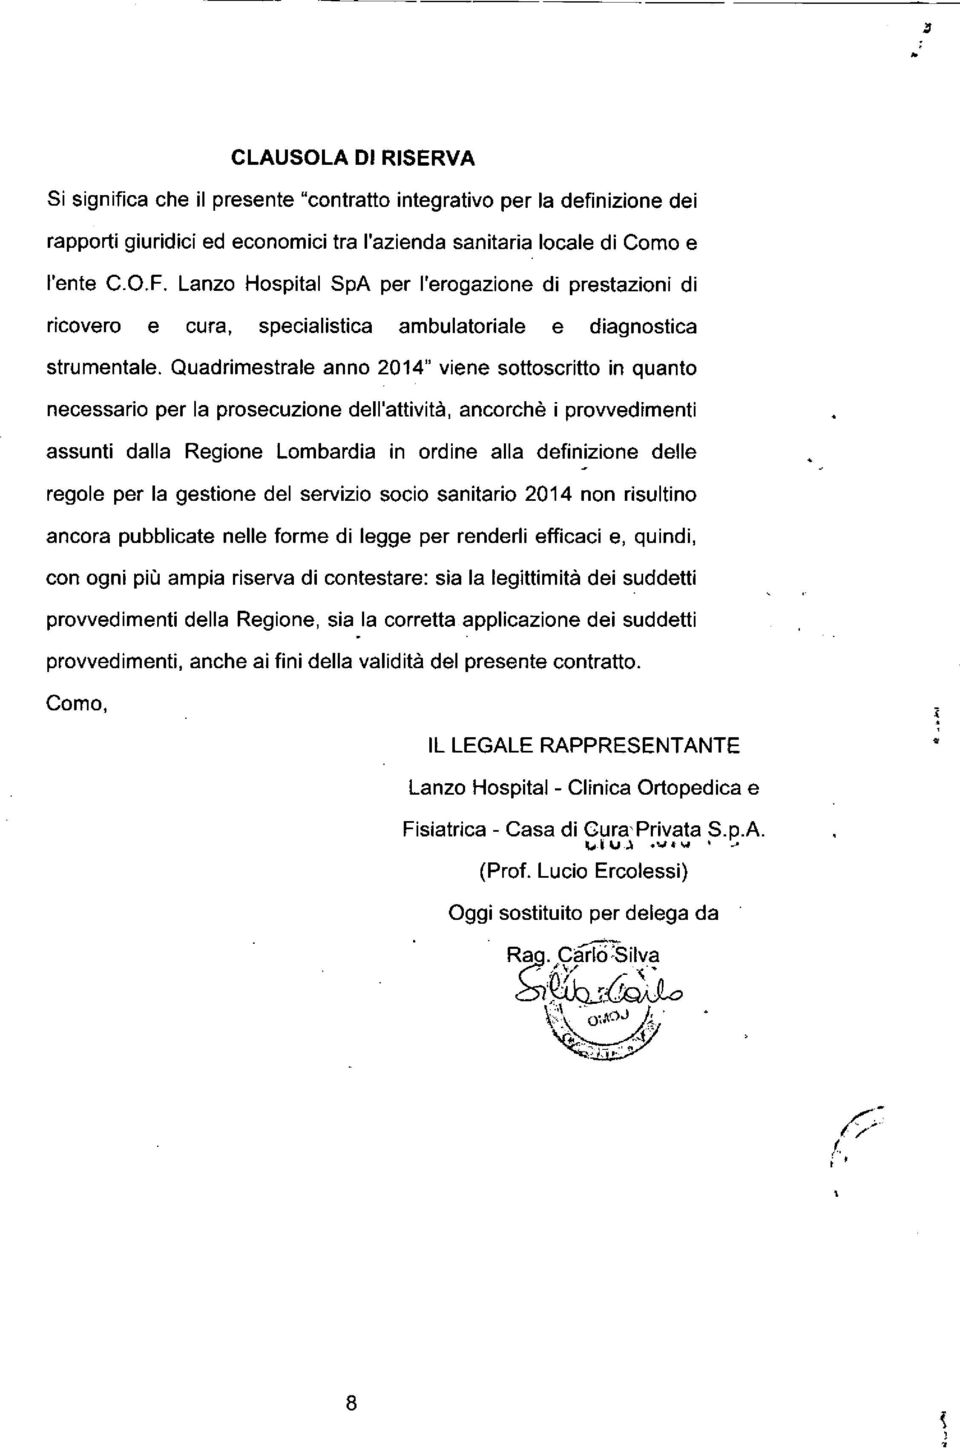 Quadrimestrale anno 2014" viene sottoscritto in quanto necessario per la prosecuzione dell'attività, ancorchè i provvedimenti assunti dalla Regione Lombardia in ordine alla definizione delle regole